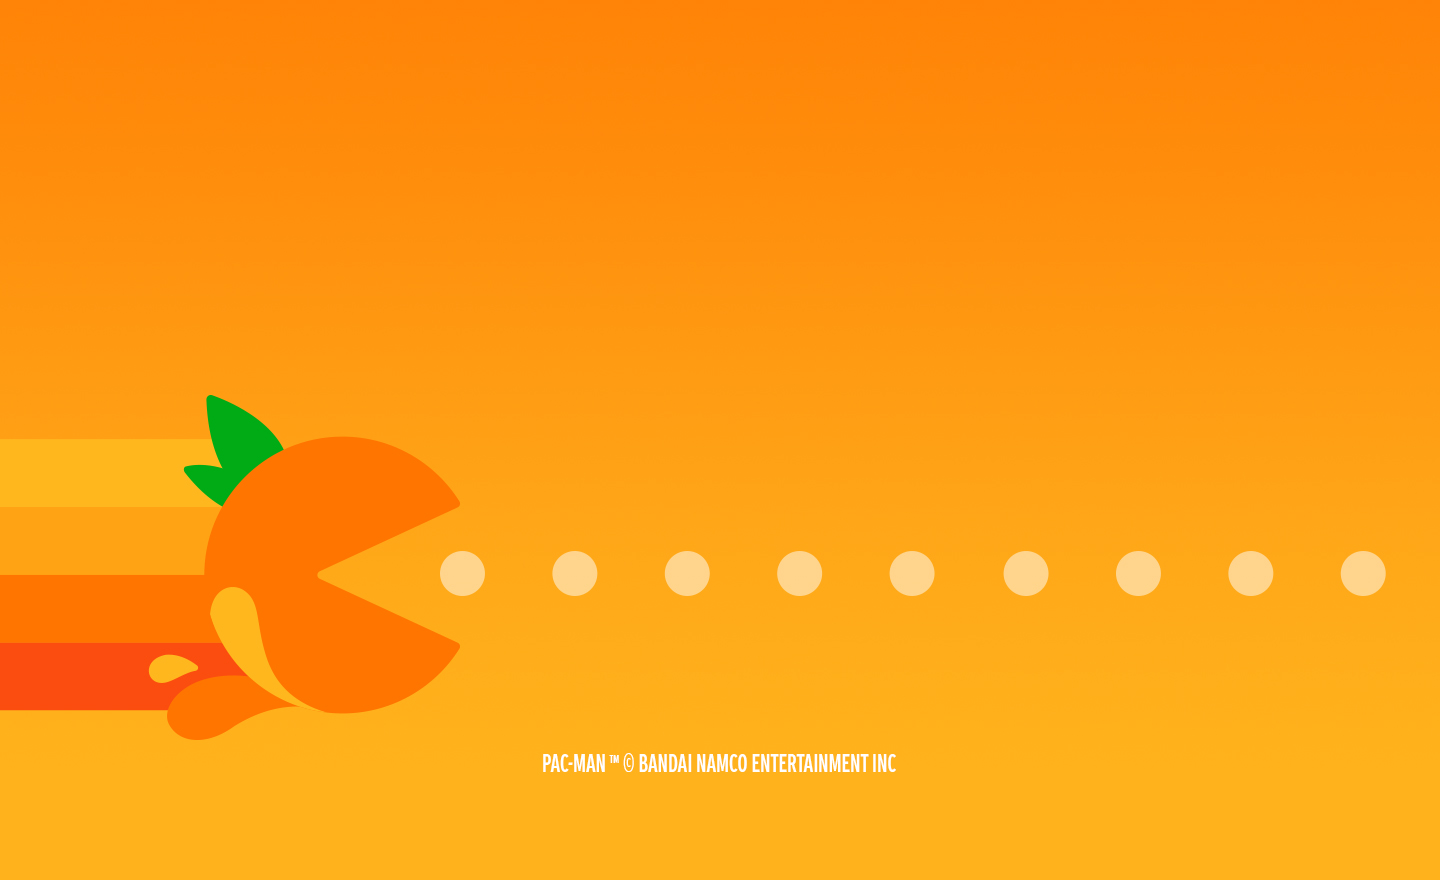 Pac-Man caracterizado como una naranja avanzando mientras come puntos sobre un fondo naranja más claro.